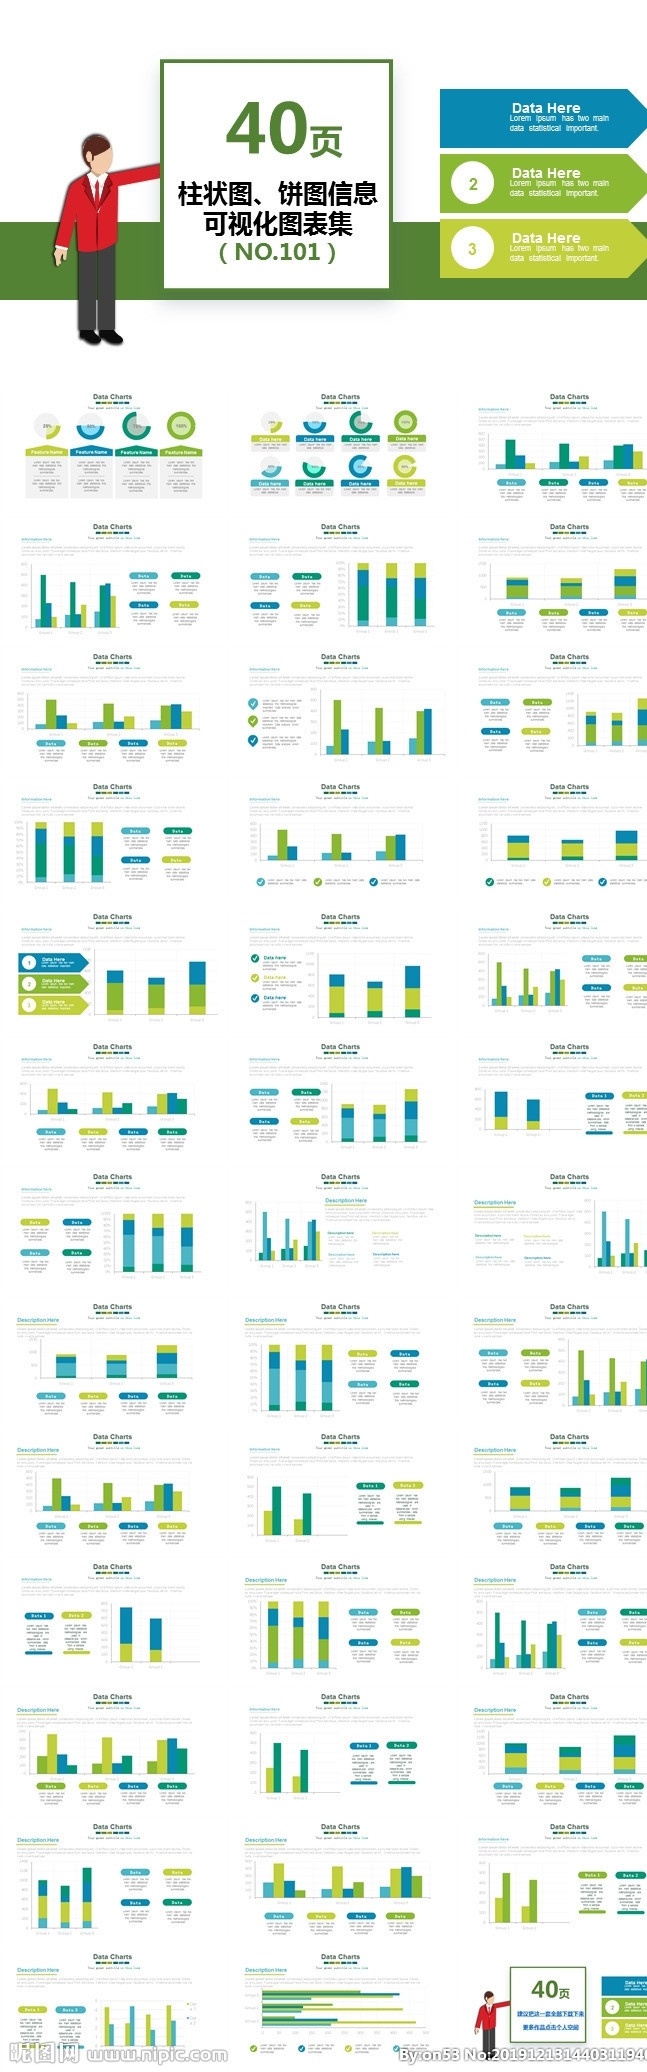 思维导图 商务图表 数据图表 商业图表 分析 蓝色 图表素材 图表合集 益智 资源 金融 投资 网络 营销 数据 统计 动态图表 关系图表 流程 柱形 饼形 数据表格 组织结构 图表 模板 数据分析 信息图表 信息 通用模板 图表信息 模板通用 合集 多媒体 pptx